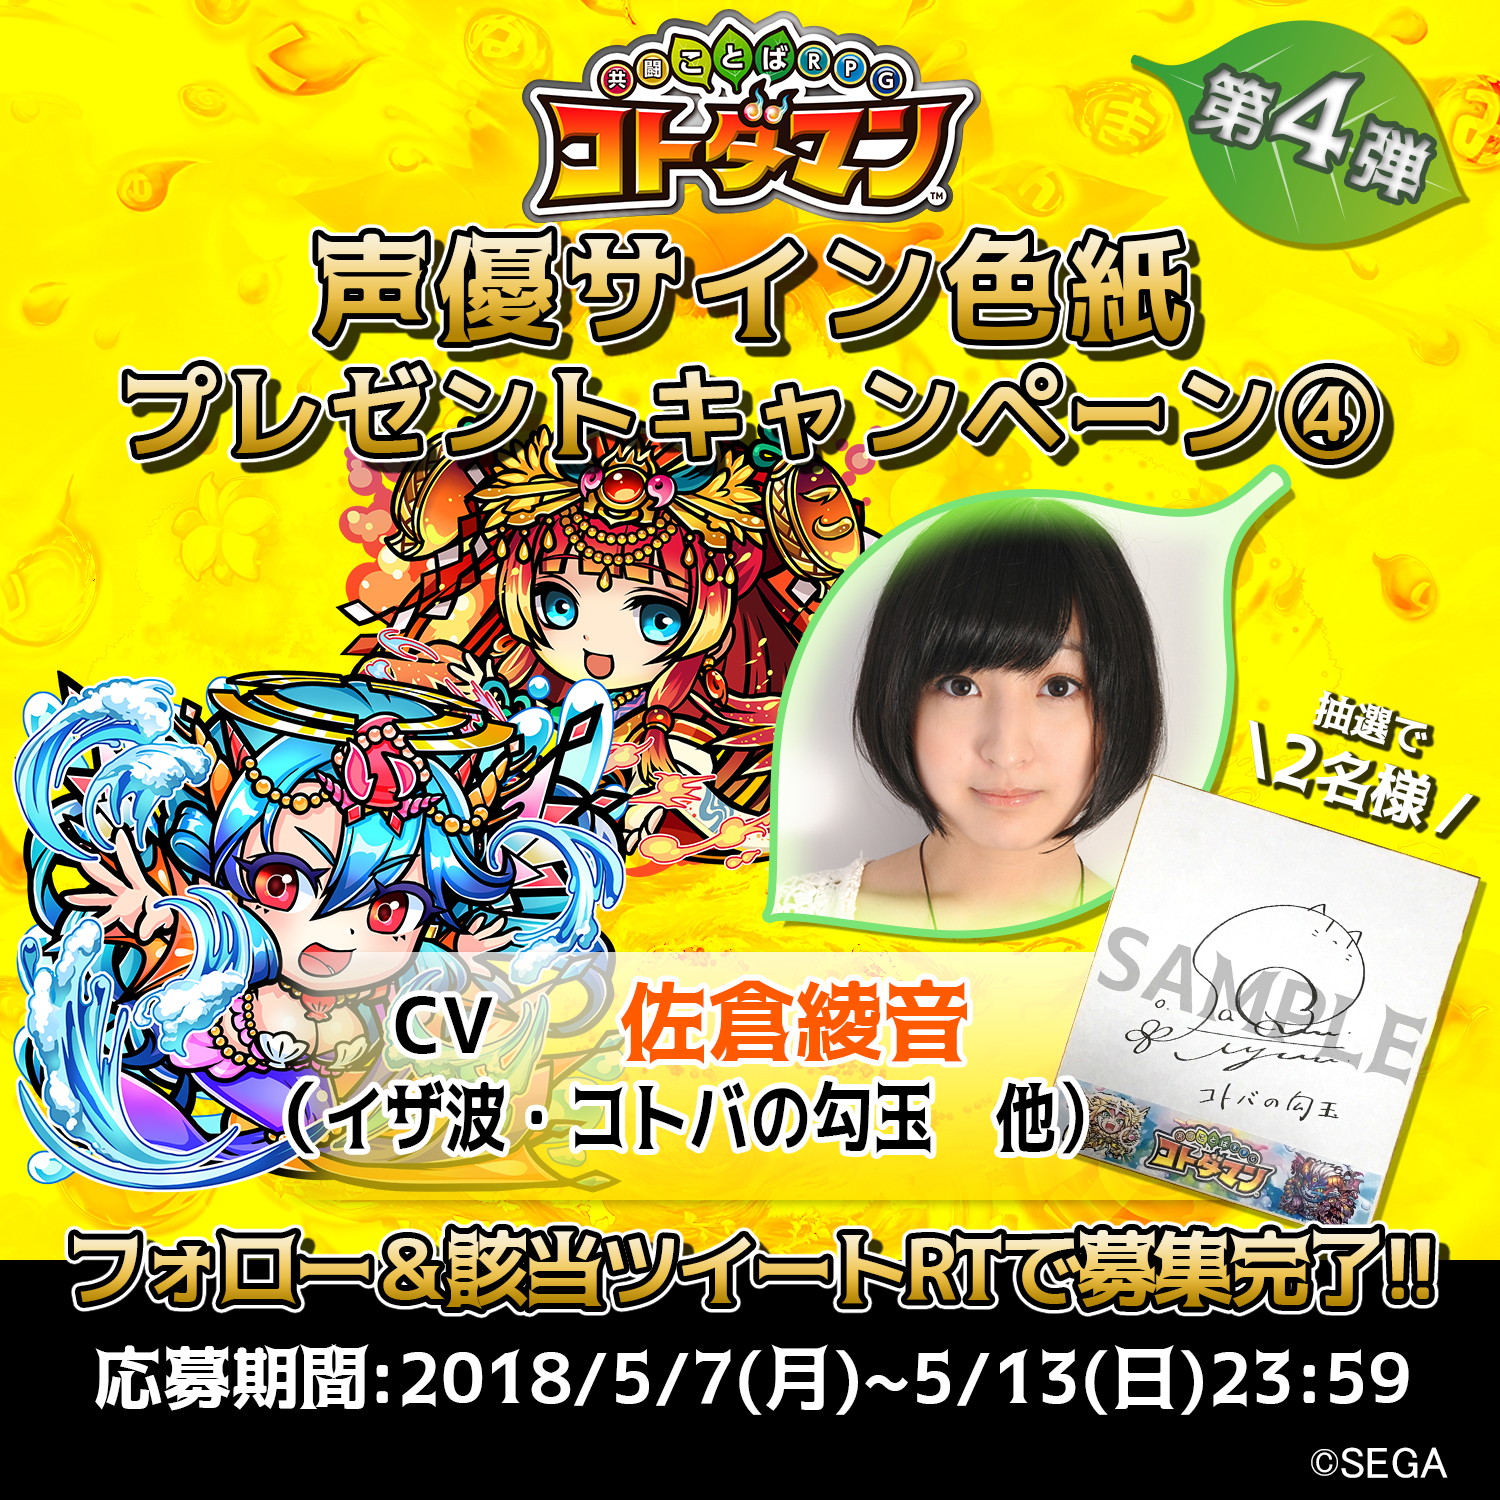 『共闘ことば RPG コトダマン』佐倉綾音サイン色紙が当たるキャンペーン開催